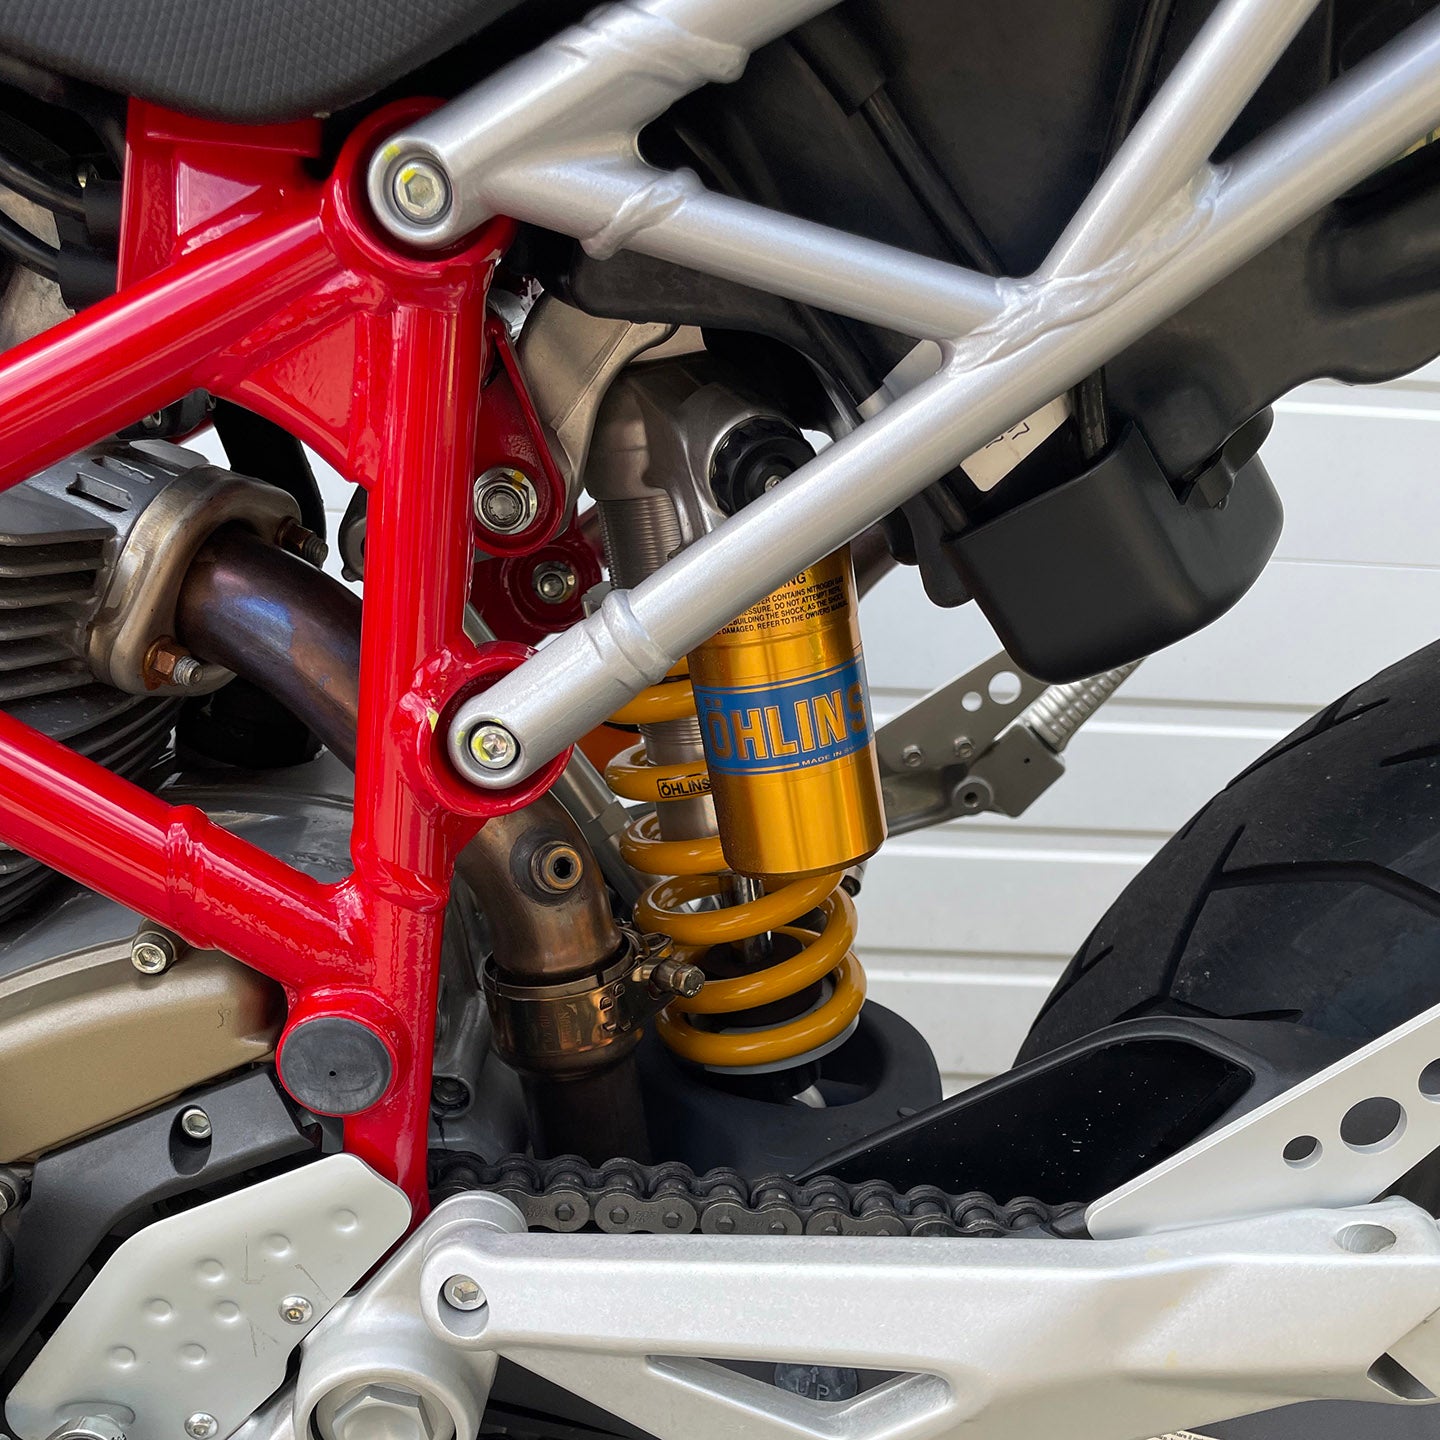 2008 Ducati Hypermotard 1100S (531 Miles)